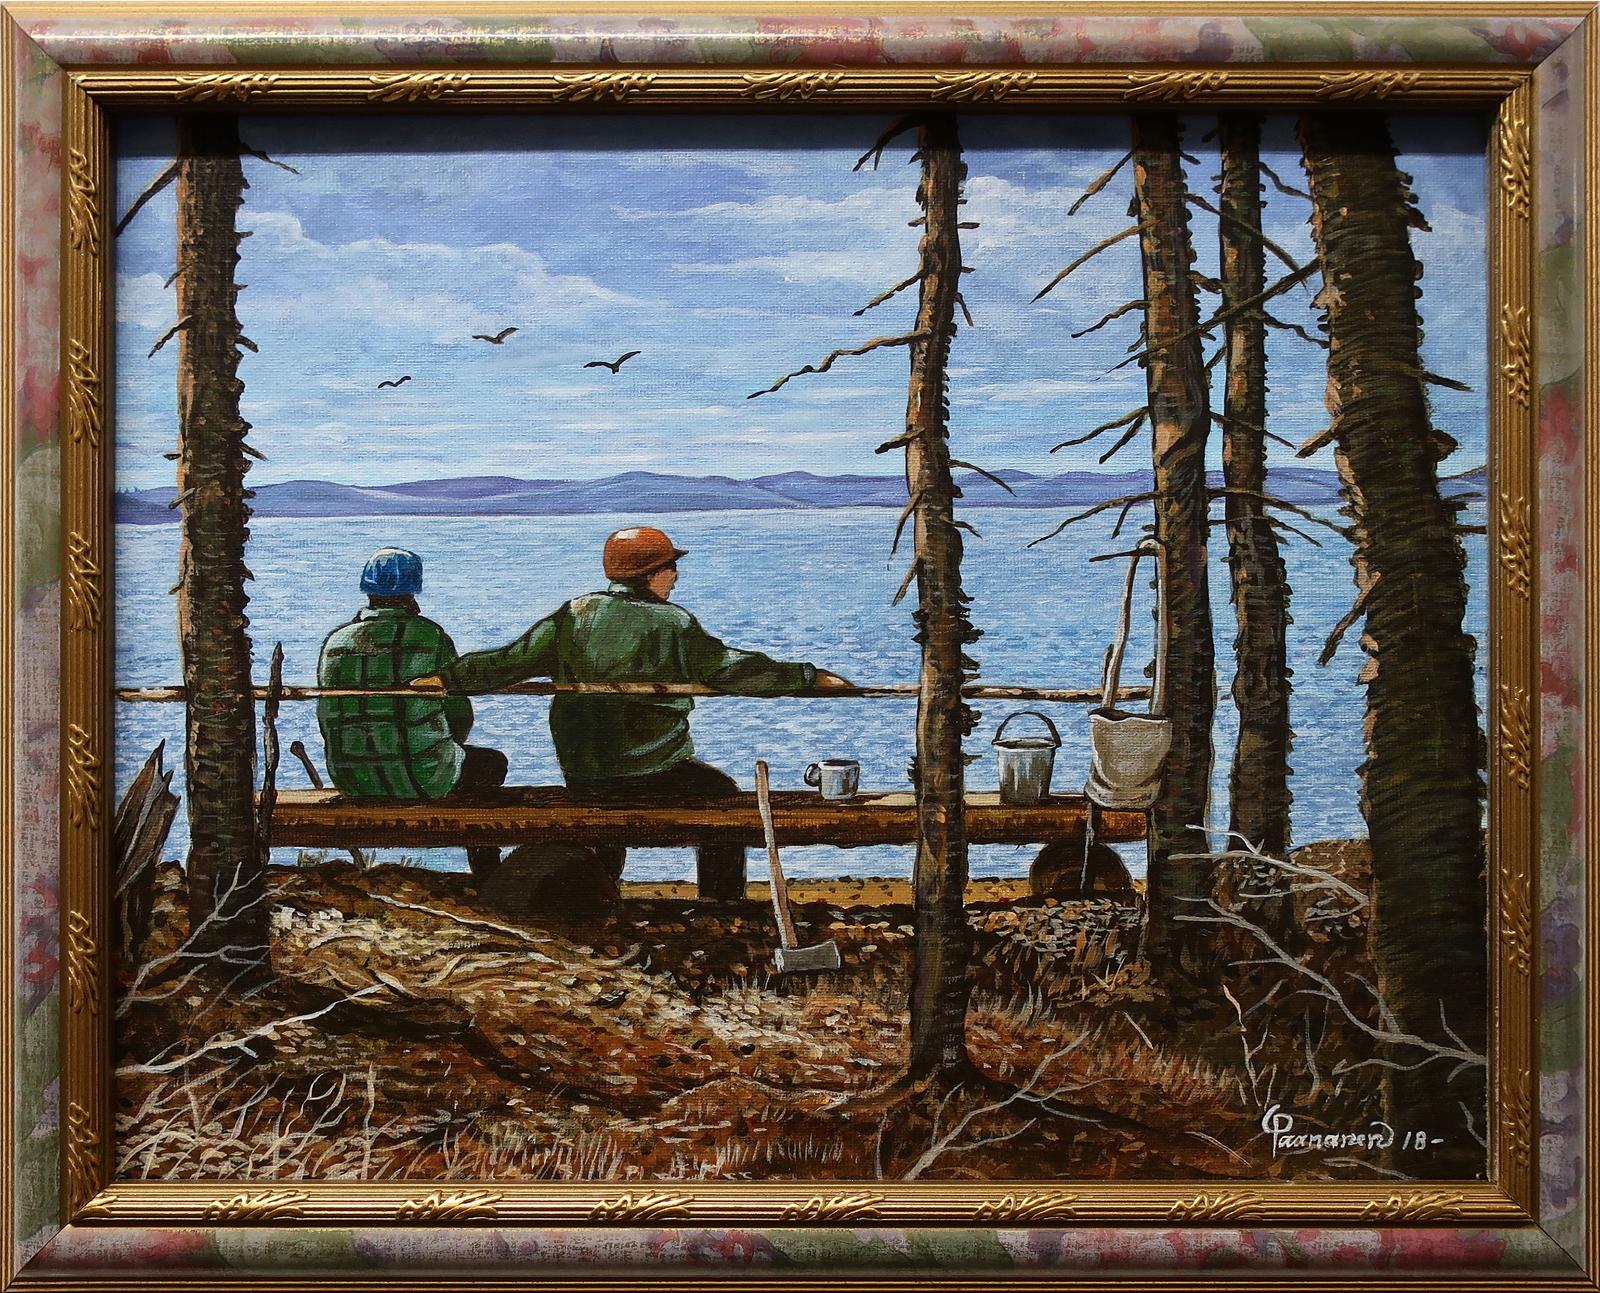 Robert Paananen (1934) - Tea Time, On Wolf Lake